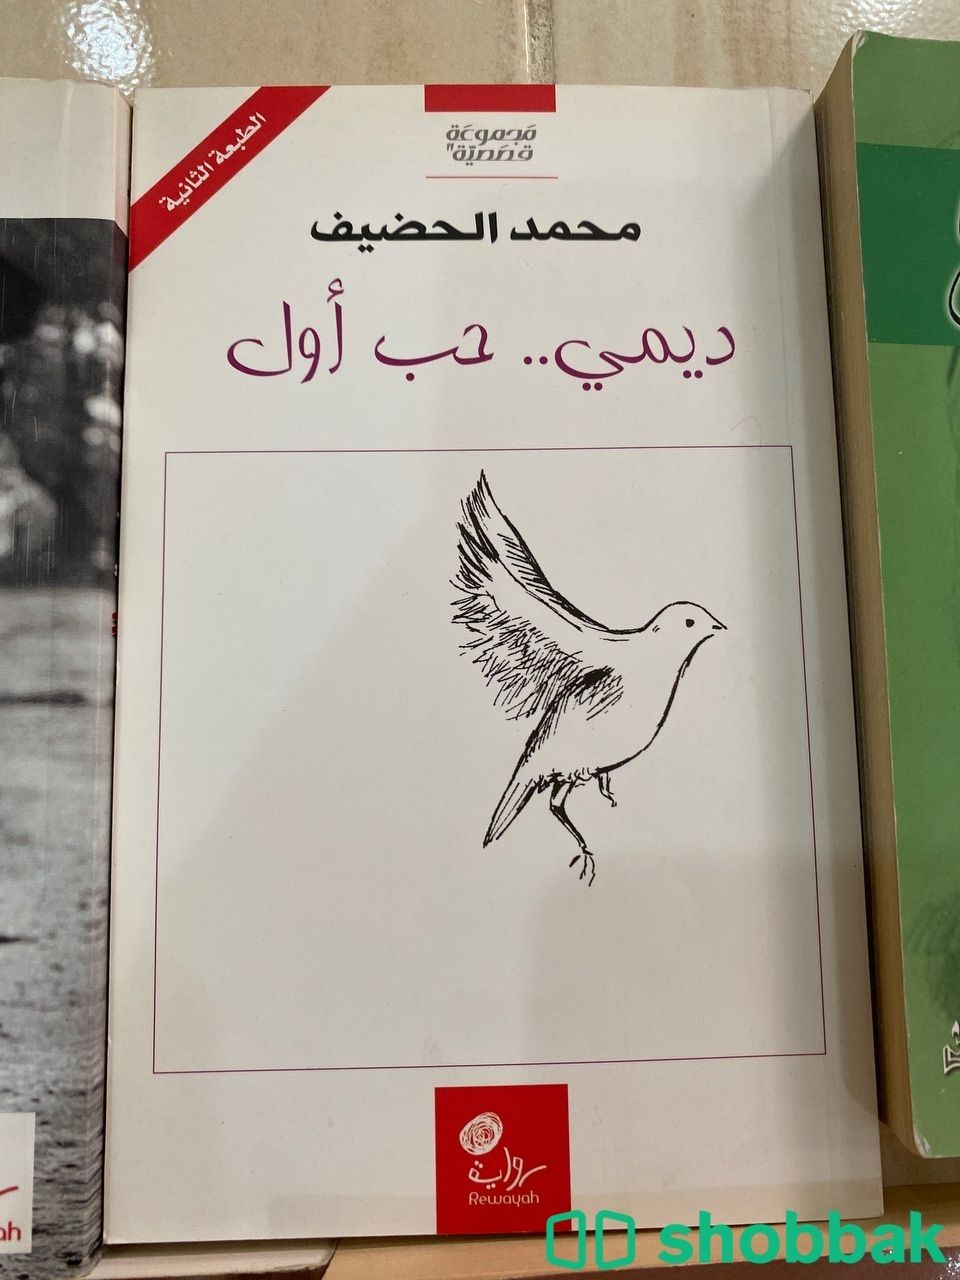 روايات للبيع  Shobbak Saudi Arabia